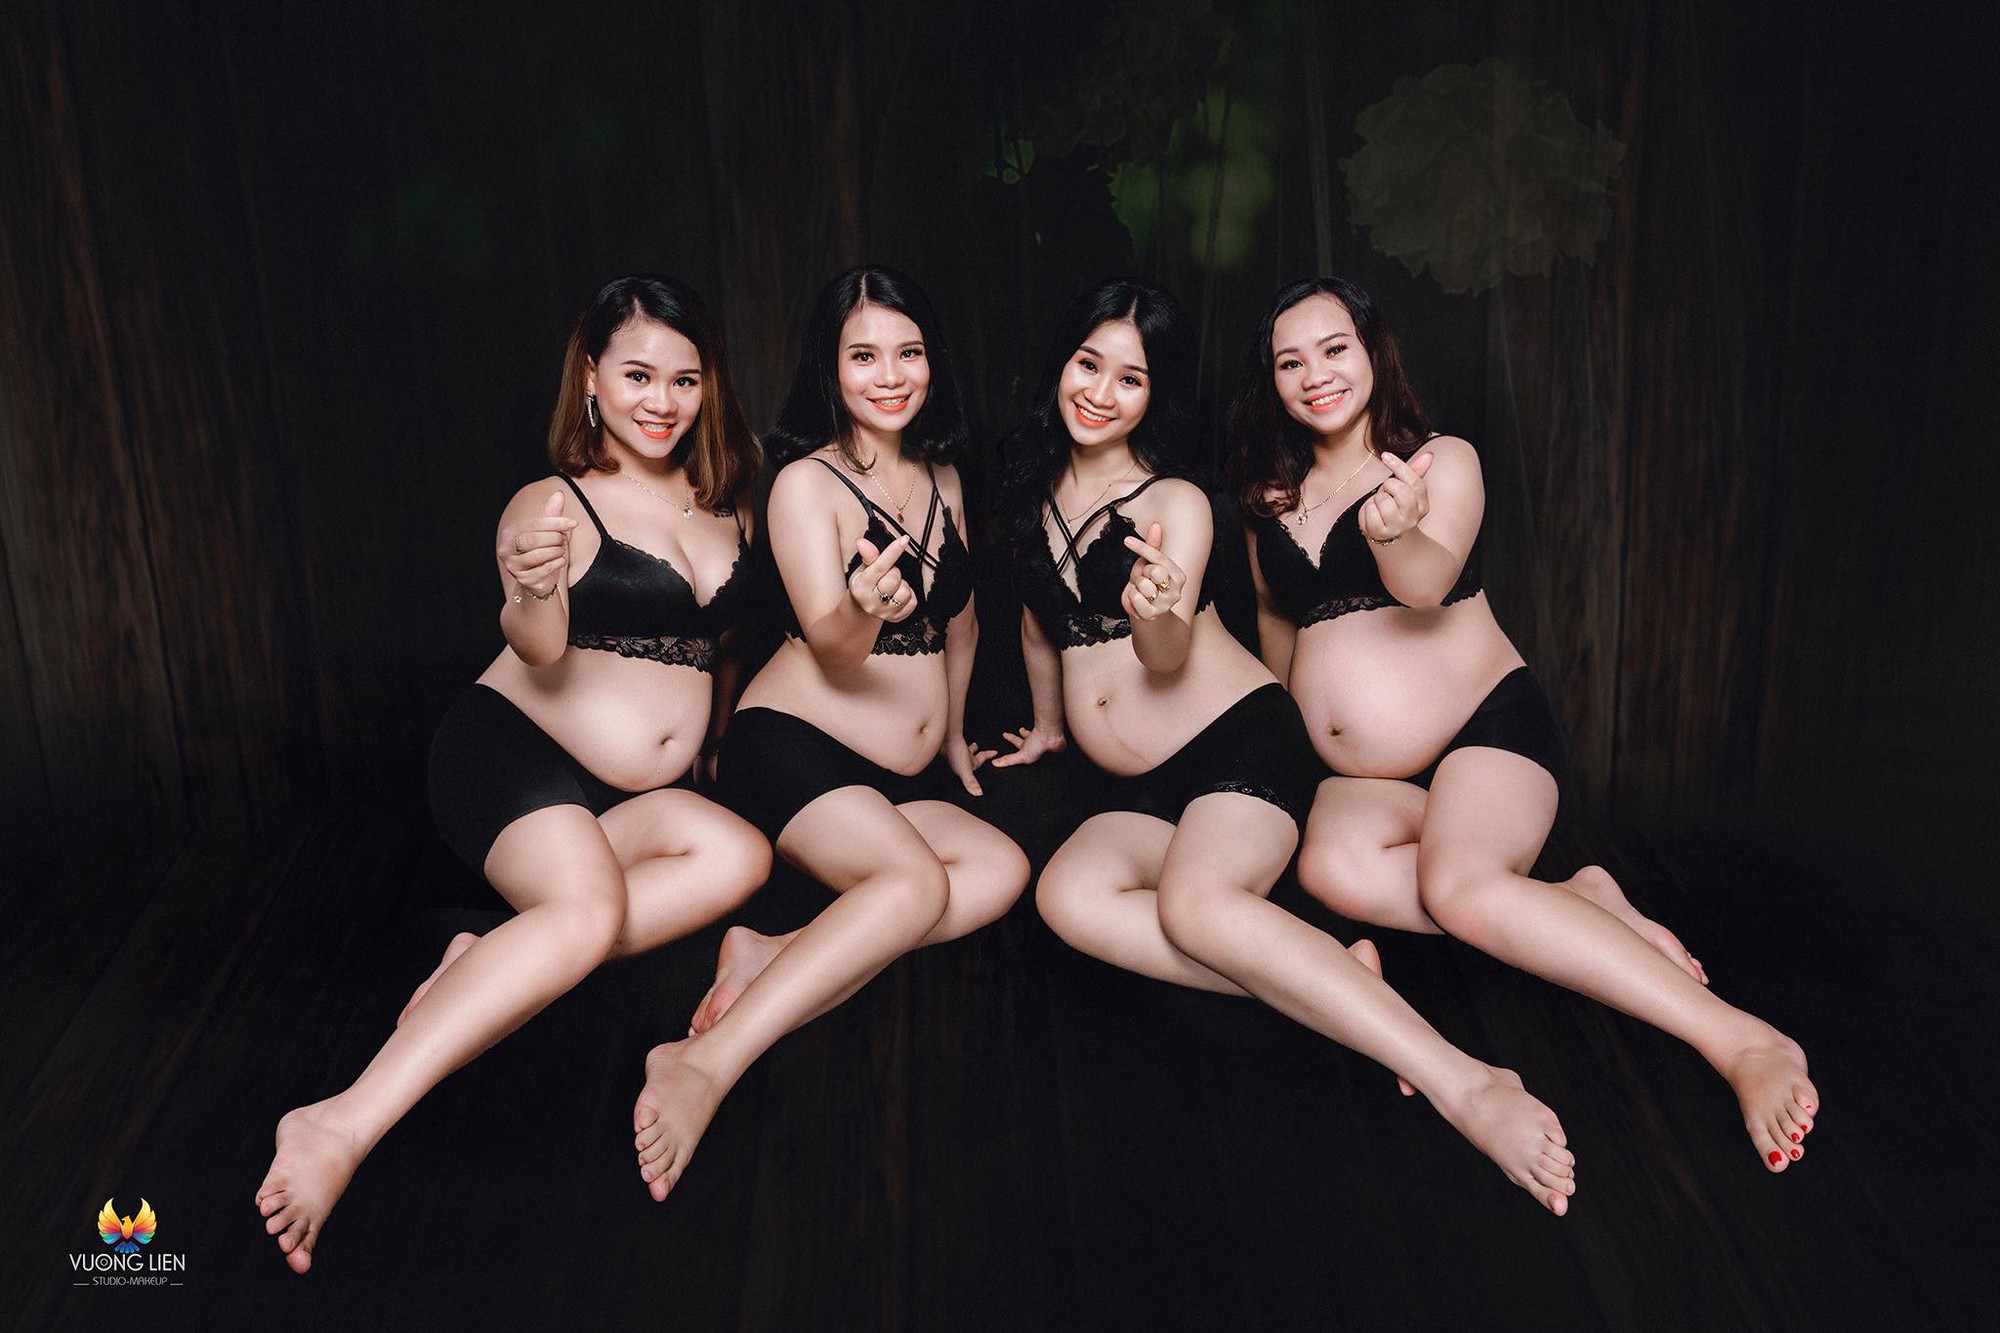 4 chị em ruột ở Nghệ An cùng mang bầu vượt mặt khiến dân mạng sửng sốt, nhưng chính chủ tiết lộ chi tiết càng bất ngờ - Ảnh 1.